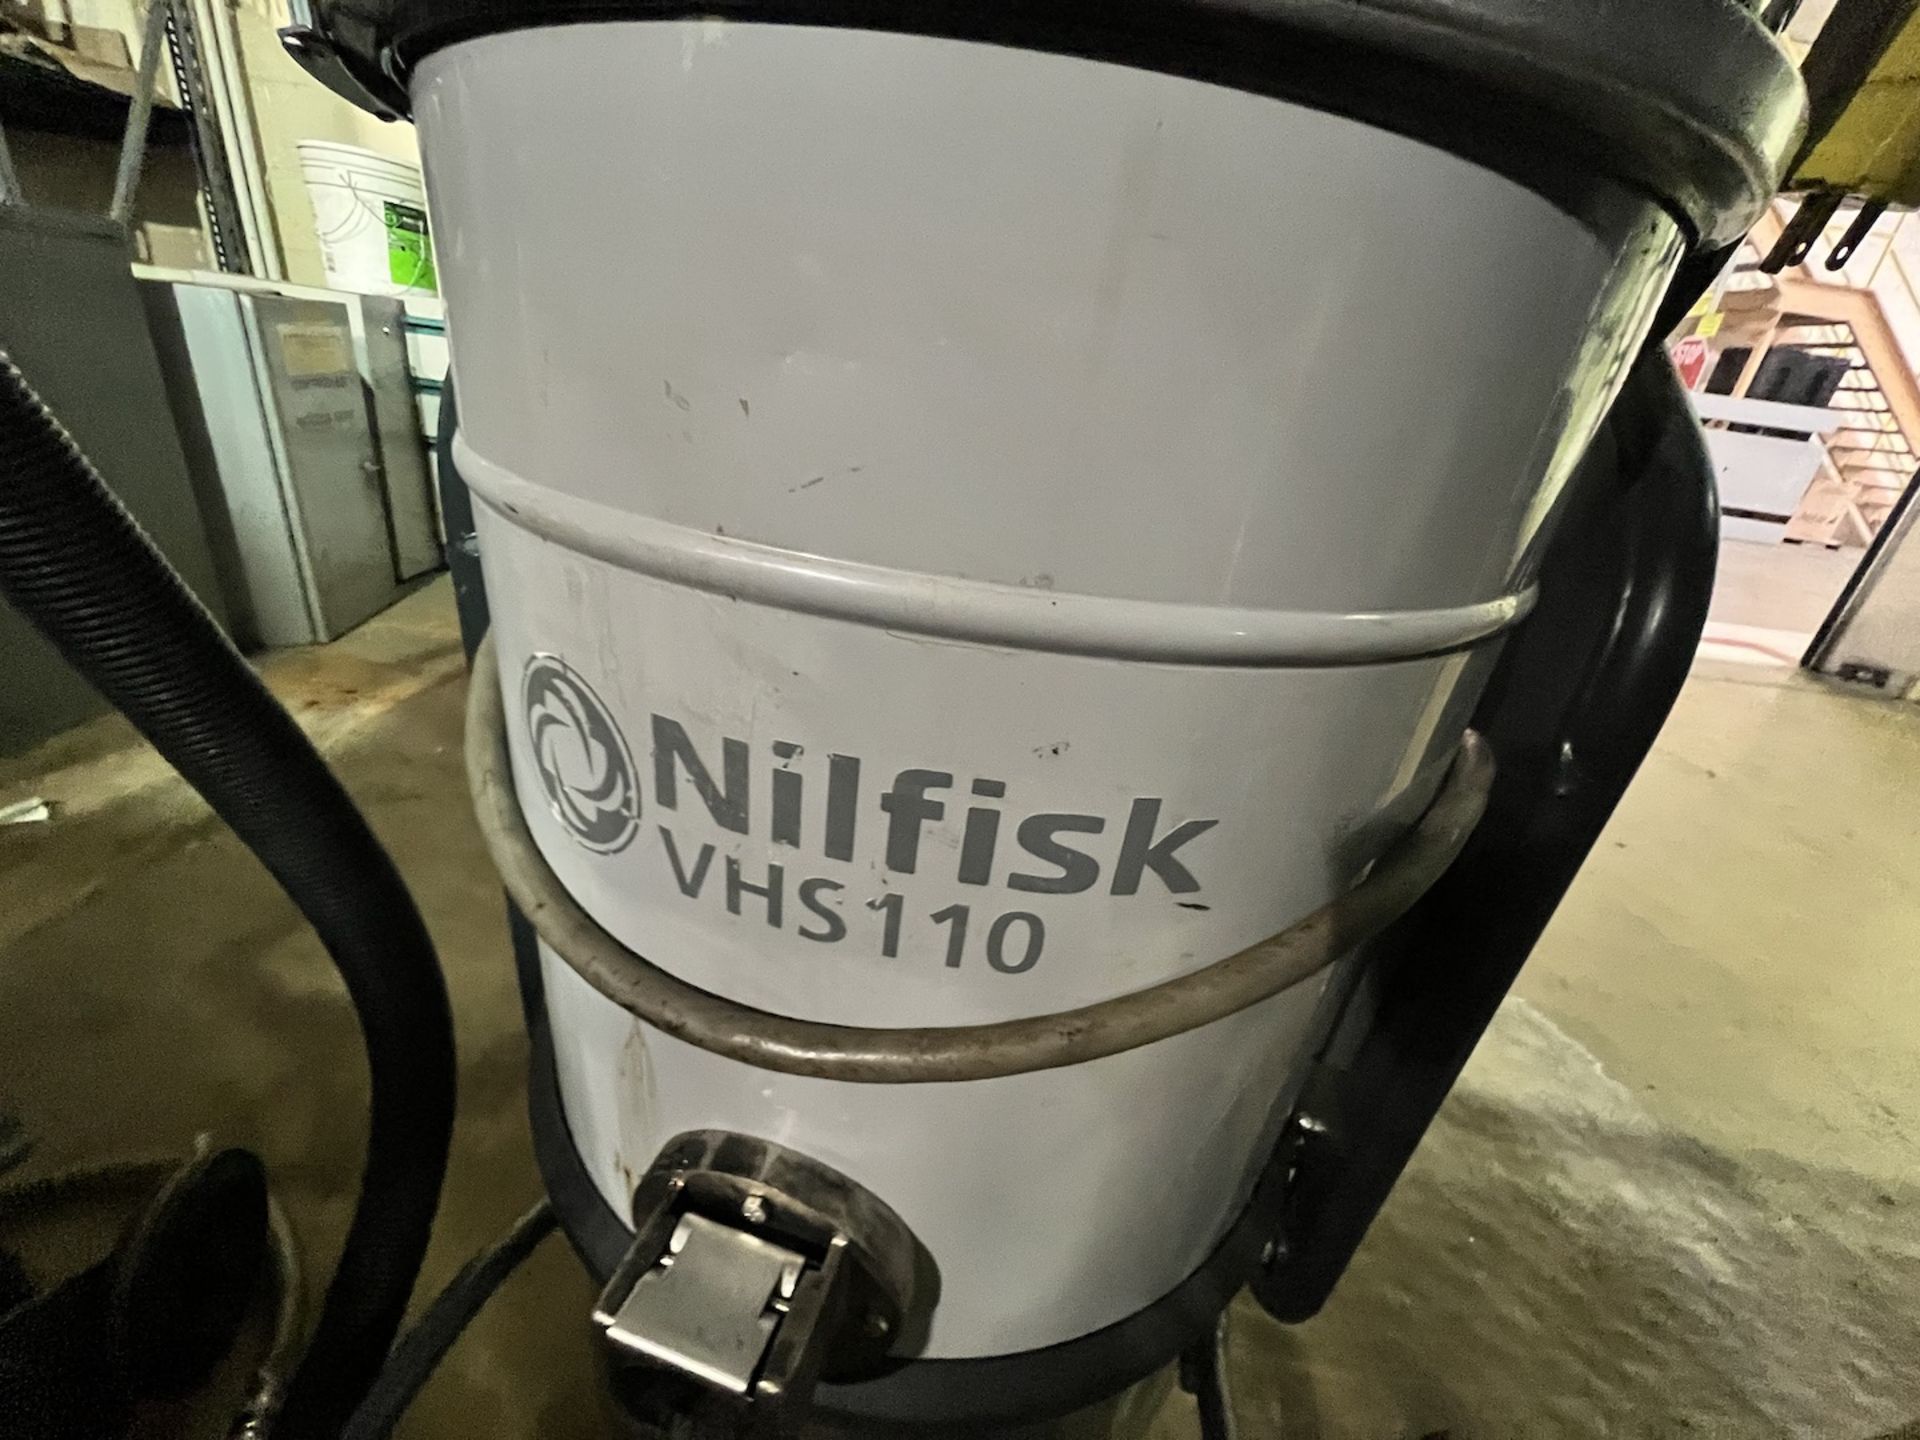 NILFISK EXPLOSION PROOF INDUSTRIAL VACUUM, MODEL VHS110, S/N 3820174800451 - Bild 3 aus 8